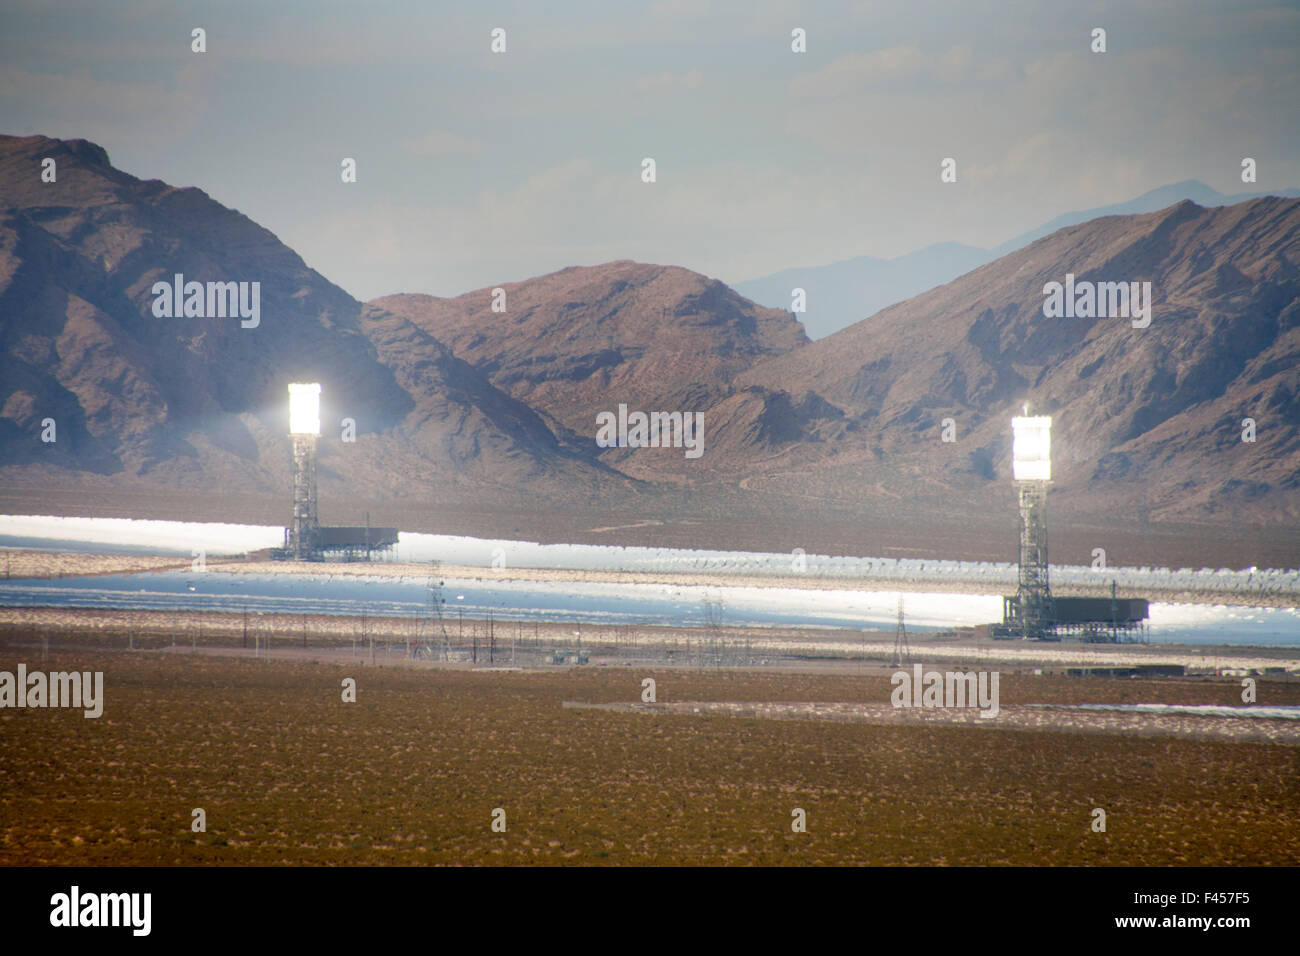 Das Ivanpah Solar erzeugen Stromsystem ist eine konzentrierte solarthermische Anlage in der kalifornischen Mojavewüste mit einer Bruttokapazität von 392 Megawatt. Es setzt 173.500 Heliostaten mit Schwerpunkt Solarenergie auf Kessel in zentralen Solarstrom Türmen. Stockfoto